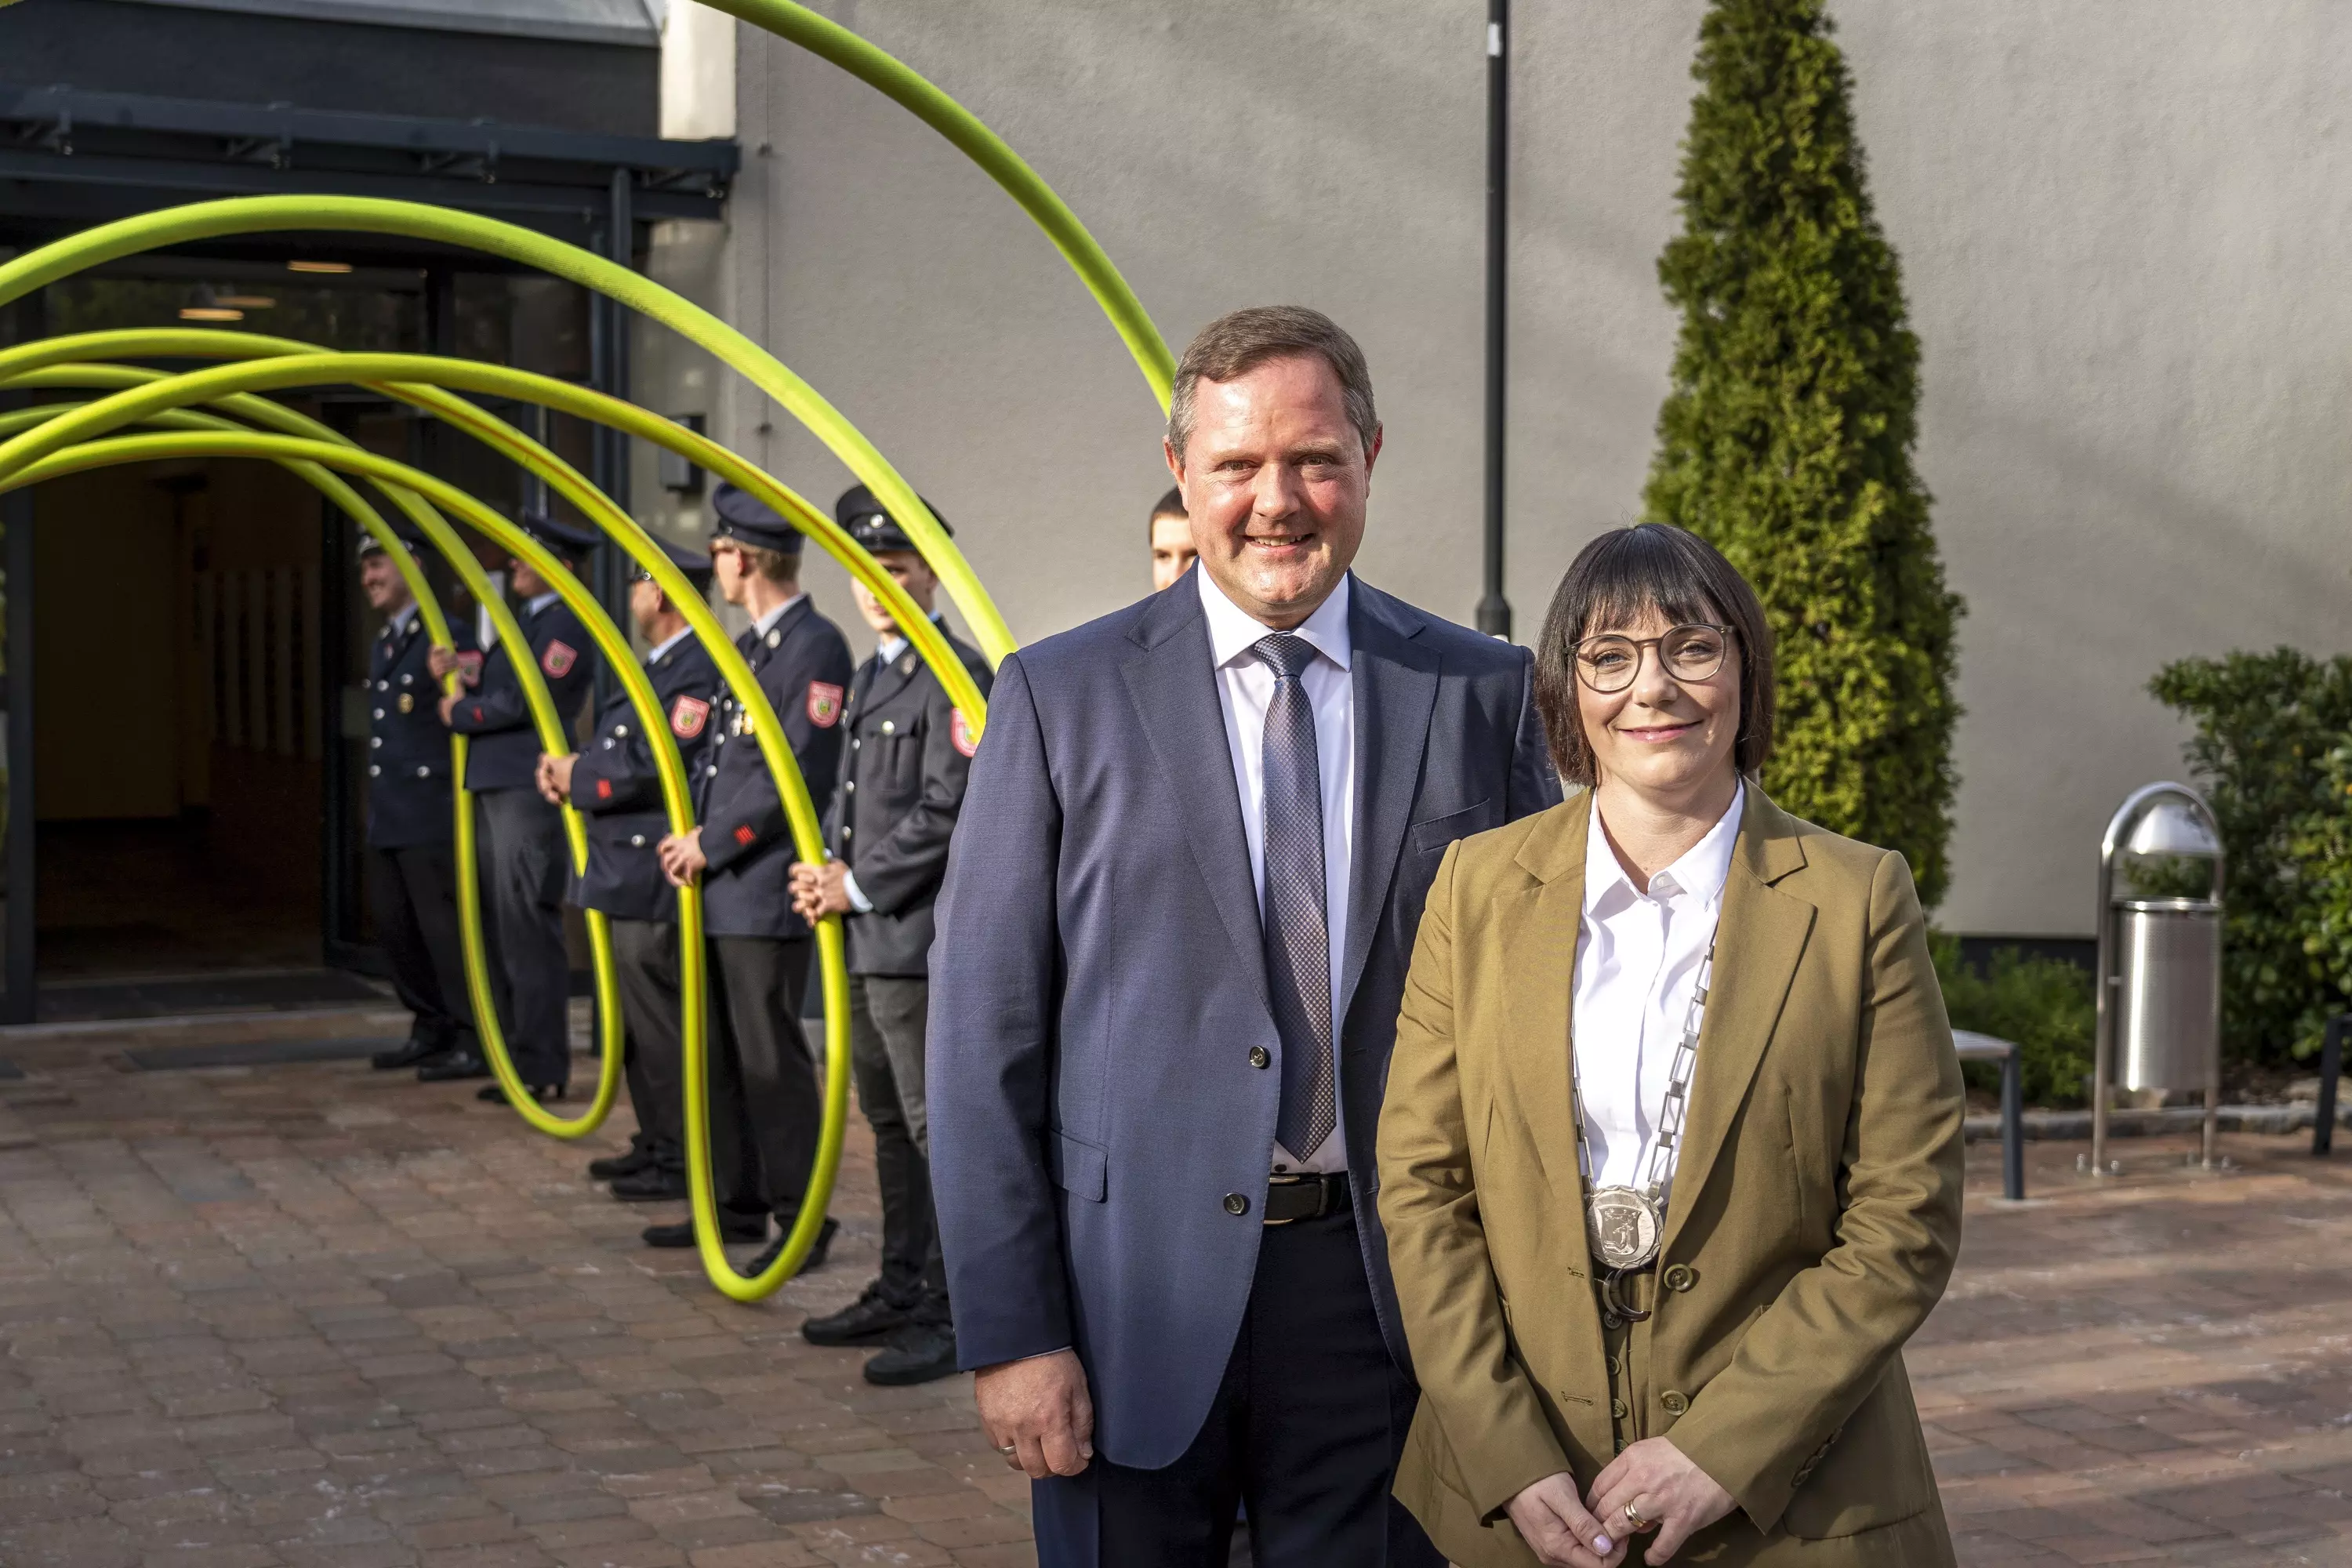 Altbürgermeister Bernd Obst und Bürgermeisterin Sarah Höfler vor Mehrzweckhalle Wachendorf